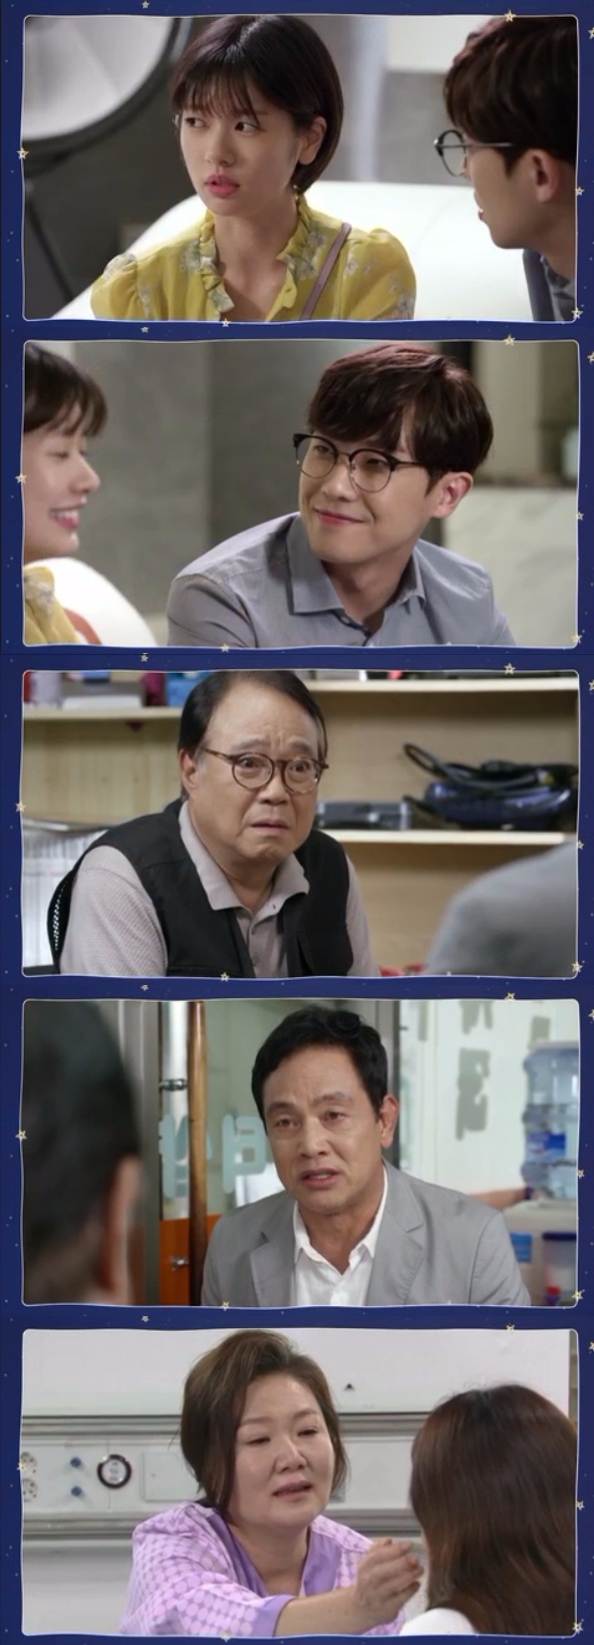 19일 밤 방송되는 KBS2 주말드라마 '아버지가 이상해' 49회에서는 안중희(이준)와 미영(정소민)의 로맨스가 깊어지는 가운데 나영실(김해숙)이 가족 몰래 유방암 수술을 하기 위해 병원에 입원하는 장면이 그려진다. 사진=KBS 영상 캡처